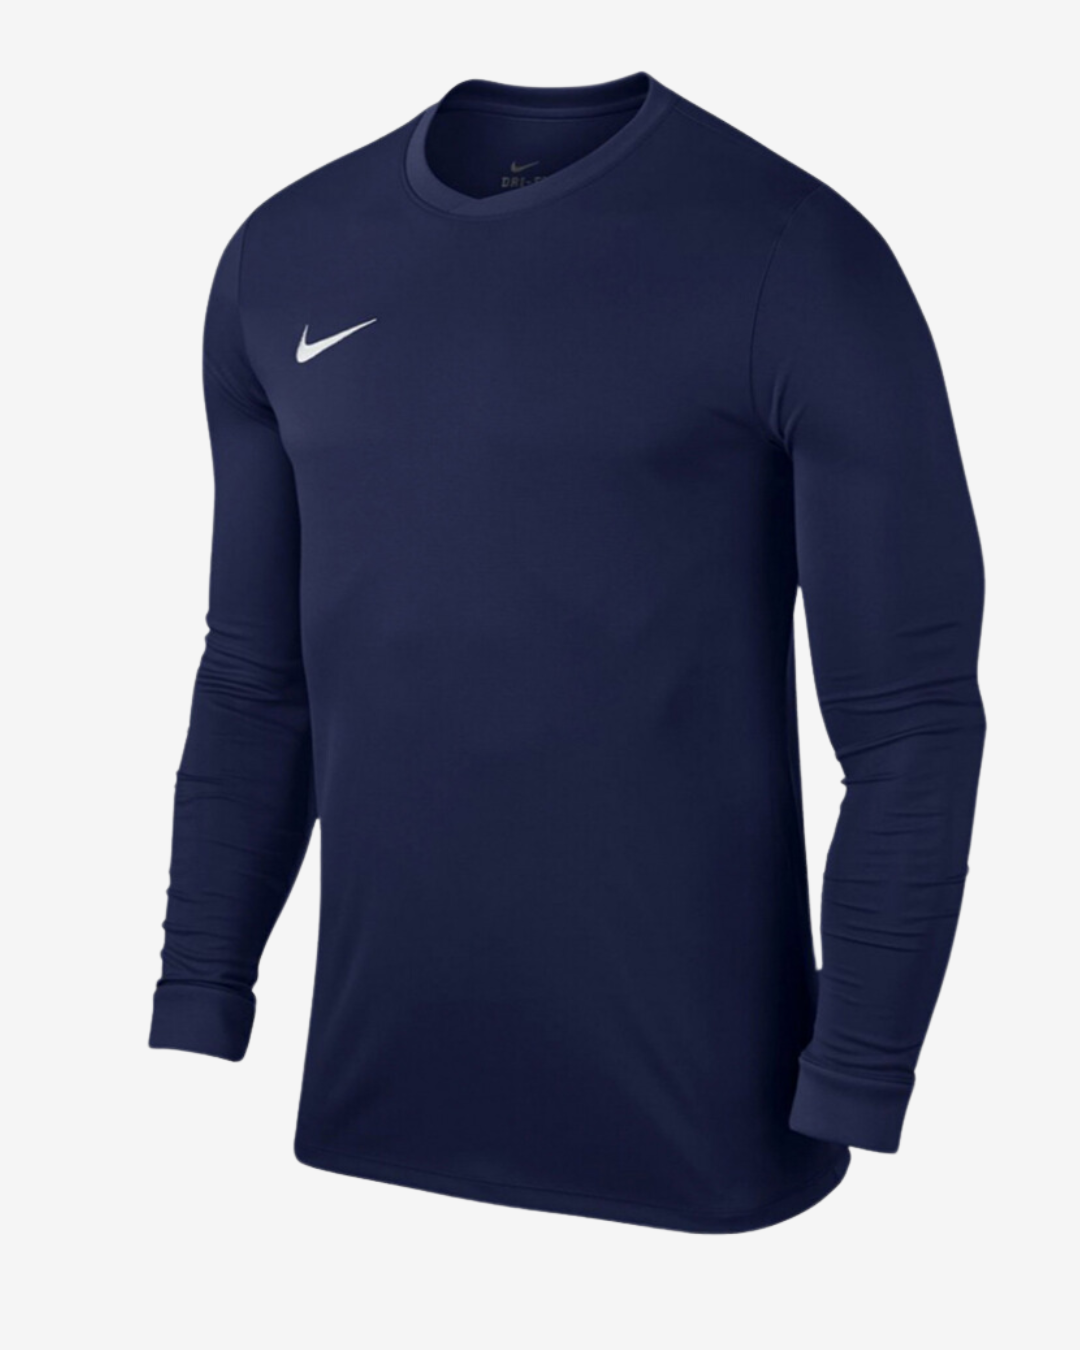 Billede af Nike Dri-fit park 7 langærmet t-shirt - Navy - Str. S - Modish.dk